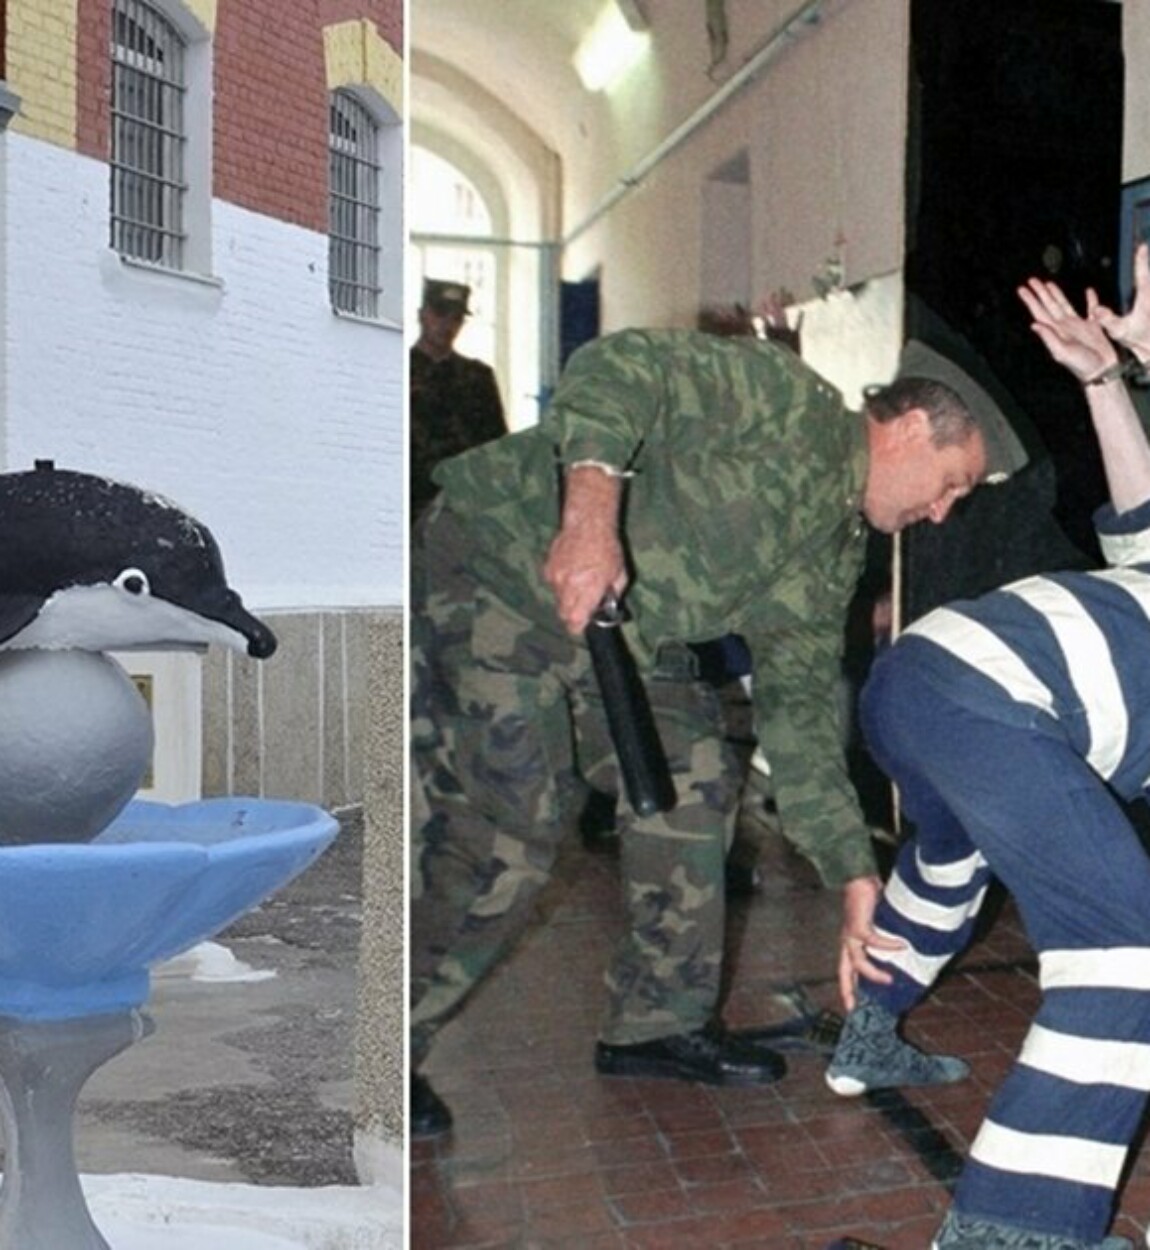 Что такое черный дельфин тюрьма. Соль-Илецк тюрьма черный Дельфин. Соль-Илецк тюрьма черный Дельфин заключенные. ИК-6 черный Дельфин. Фонтанчик с черным дельфином тюрьма.